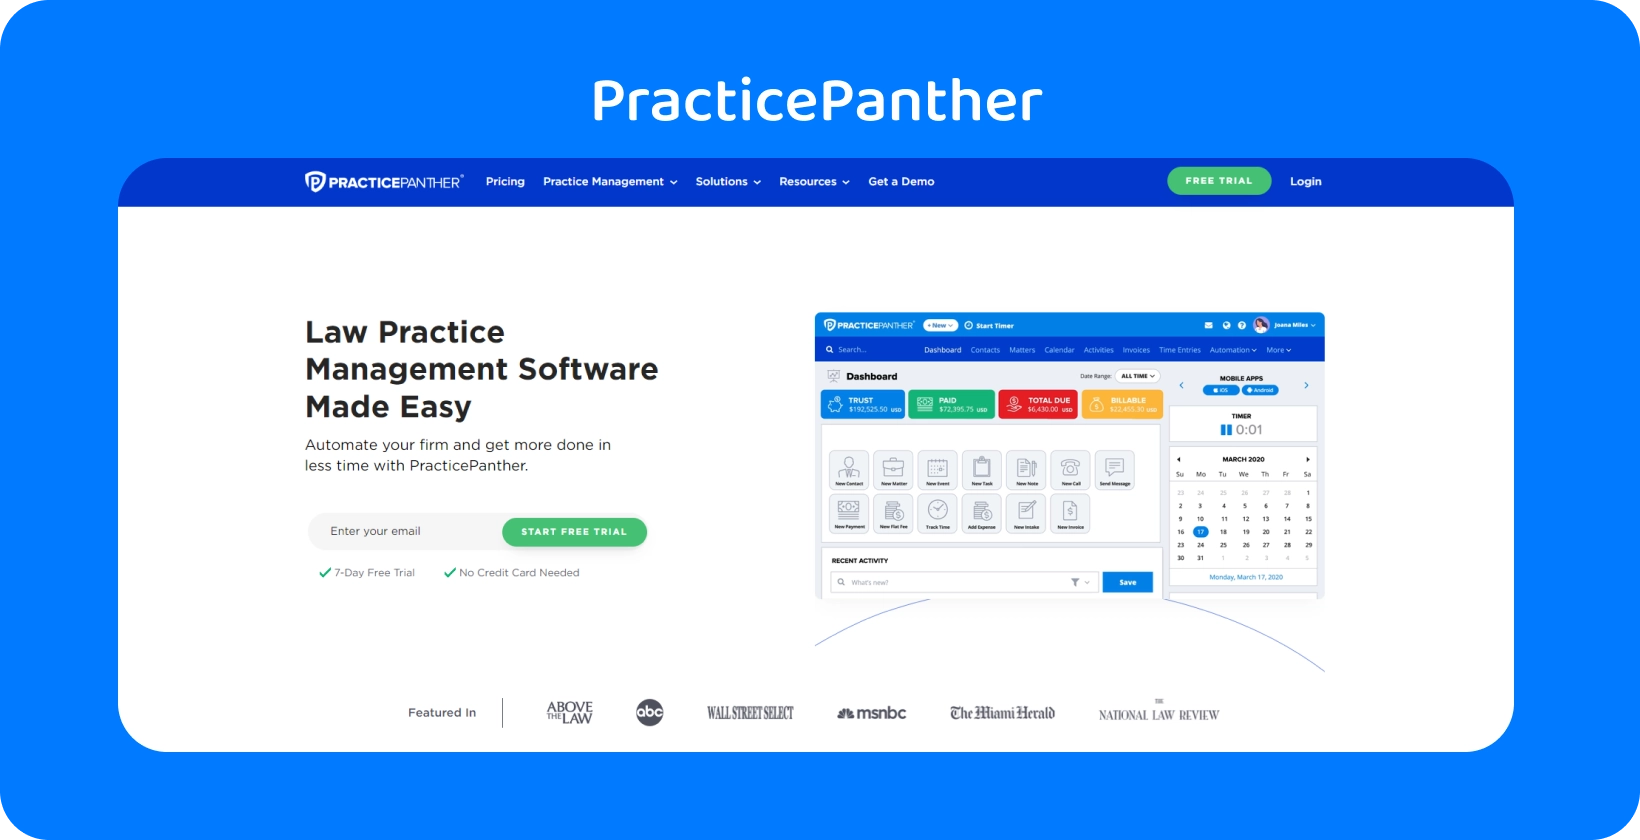 Панель управления PracticePanther, демонстрирующая инструменты для управления юридической практикой.